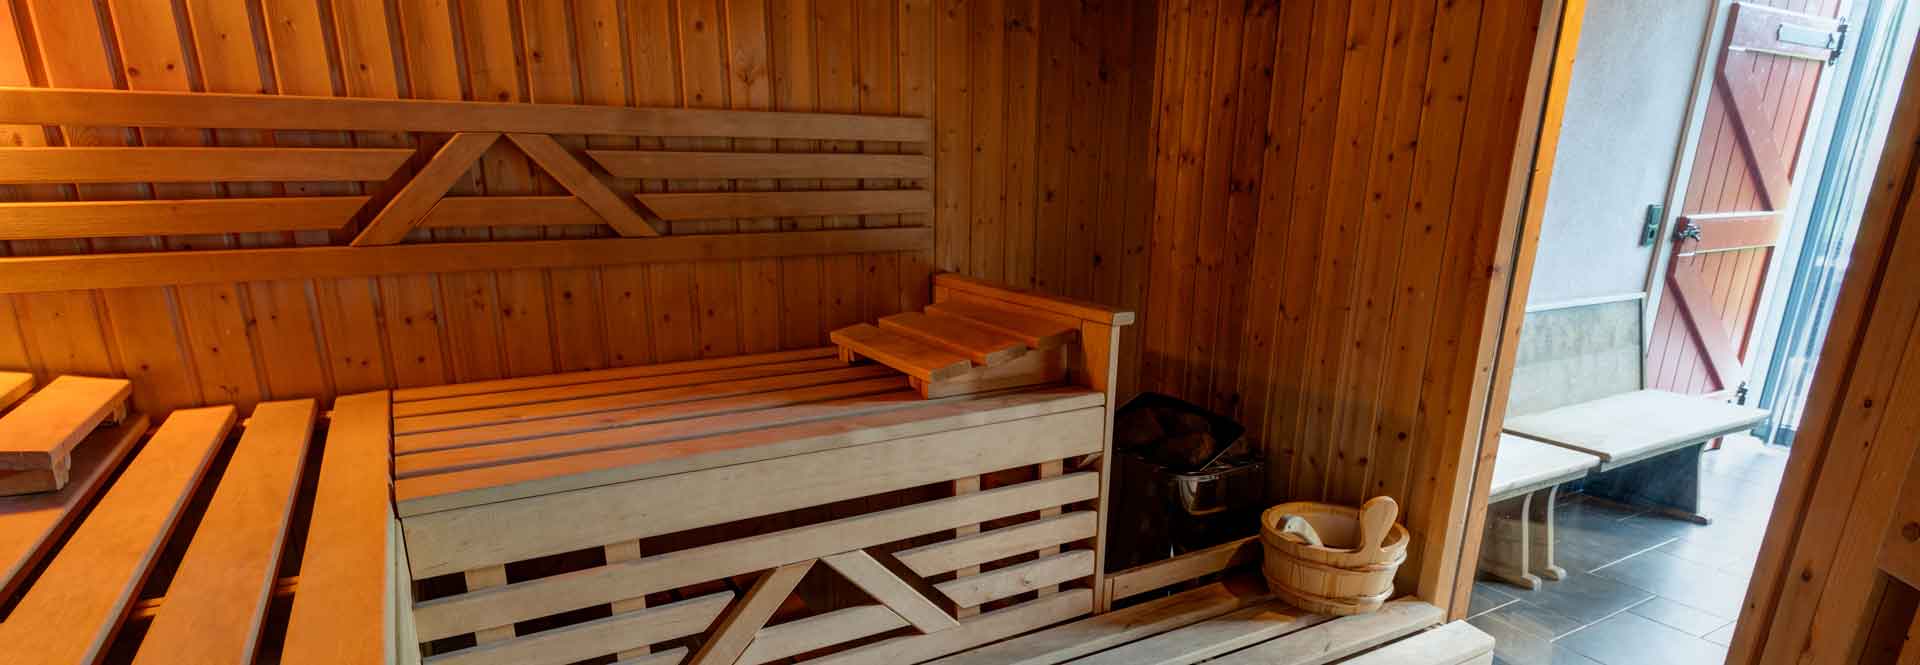 Sauna und private Dusche nebenan